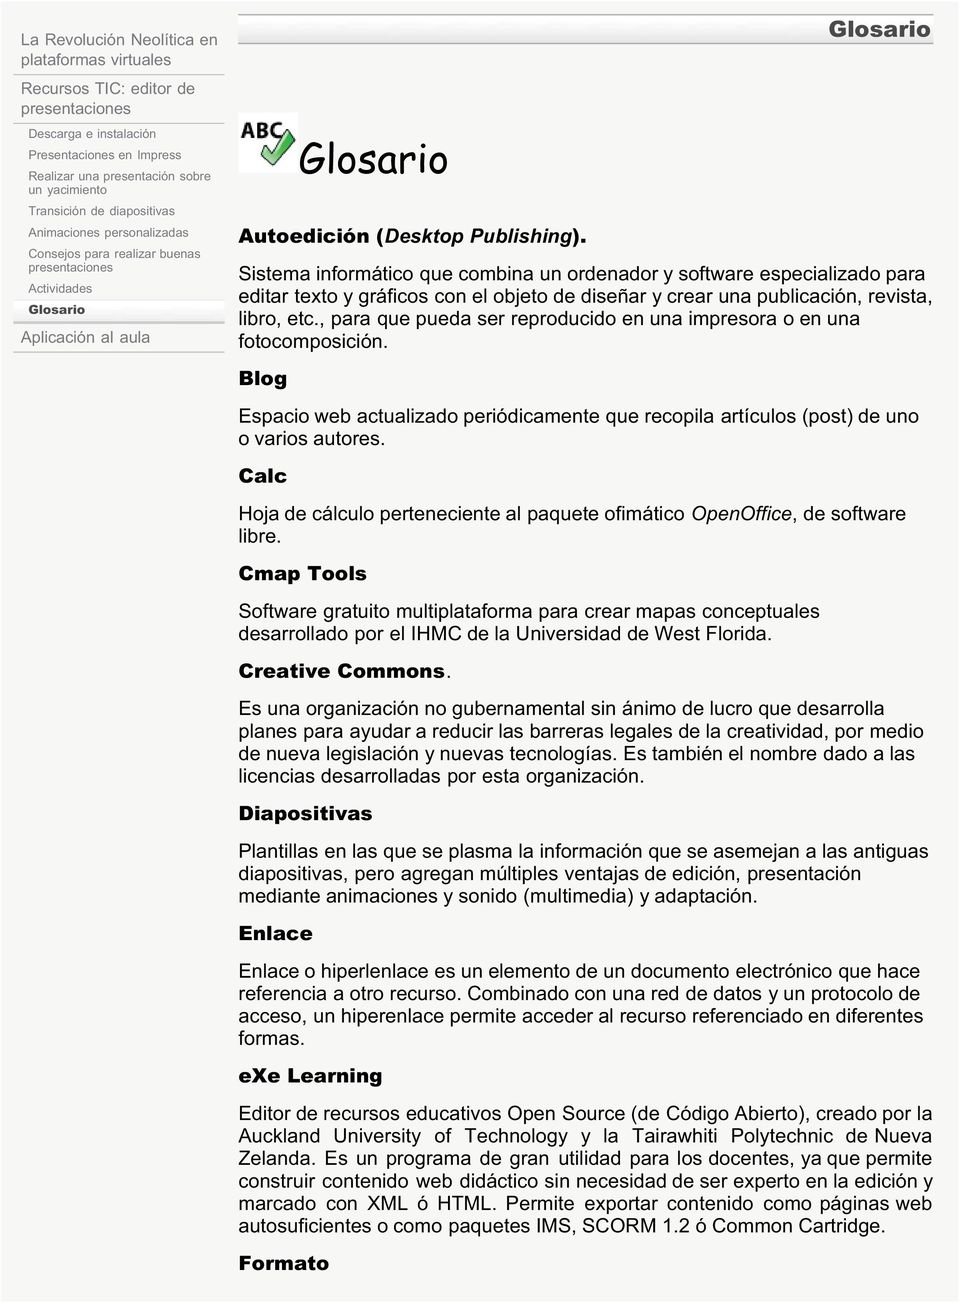 Glosario Sistema informático que combina un ordenador y software especializado para editar texto y gráficos con el objeto de diseñar y crear una publicación, revista, libro, etc.